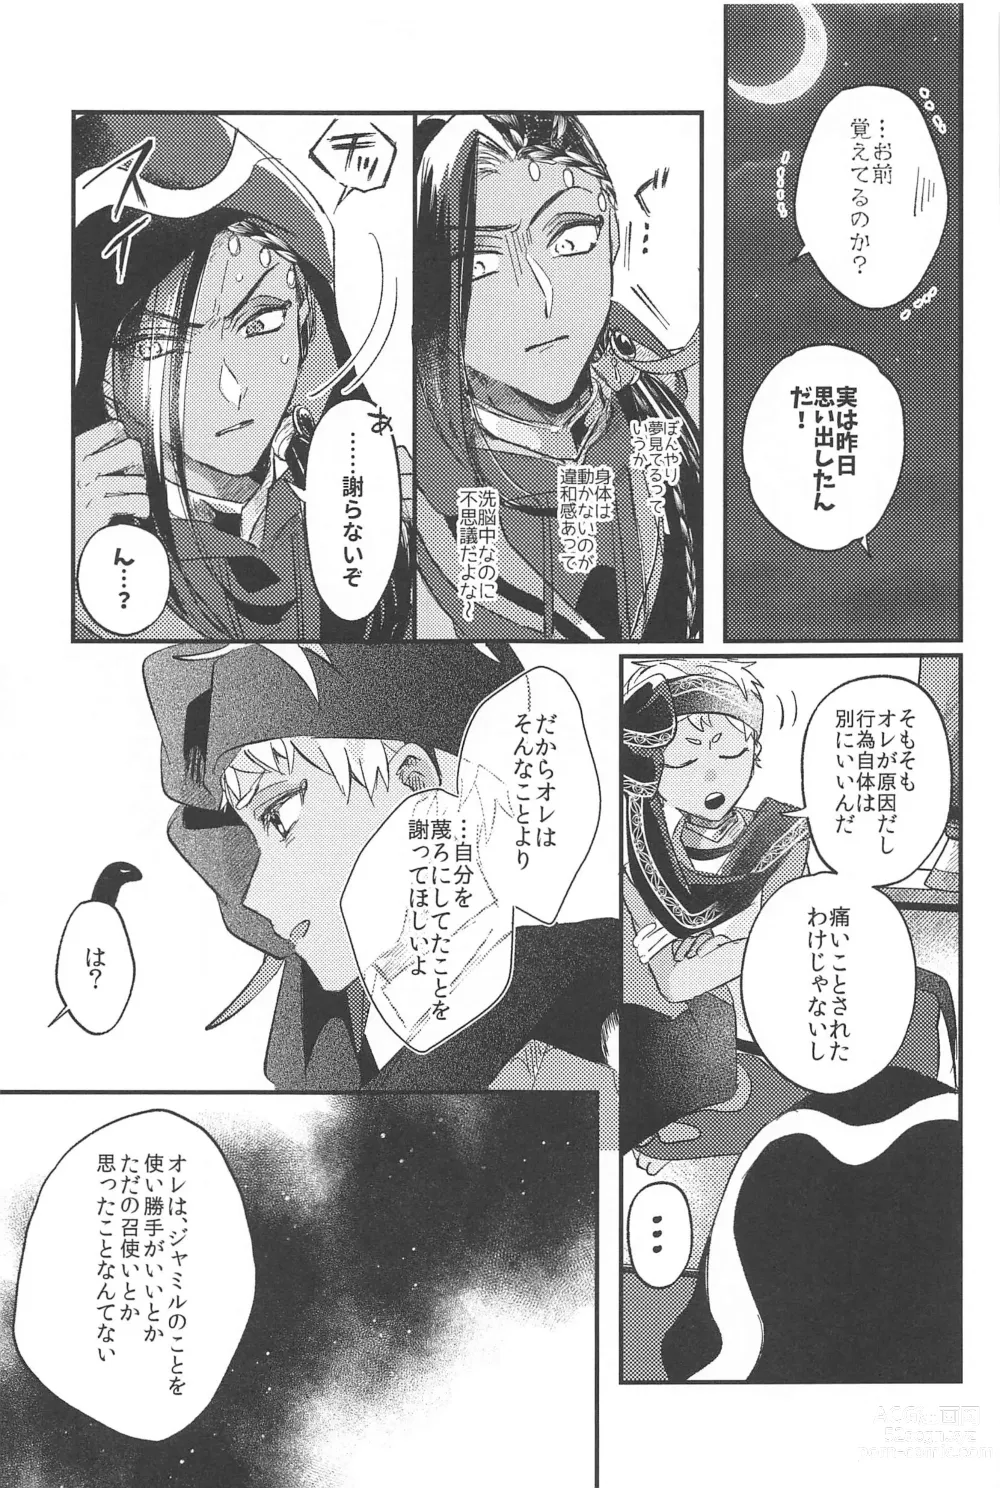 Page 37 of doujinshi Kantan dakara Muzukashii